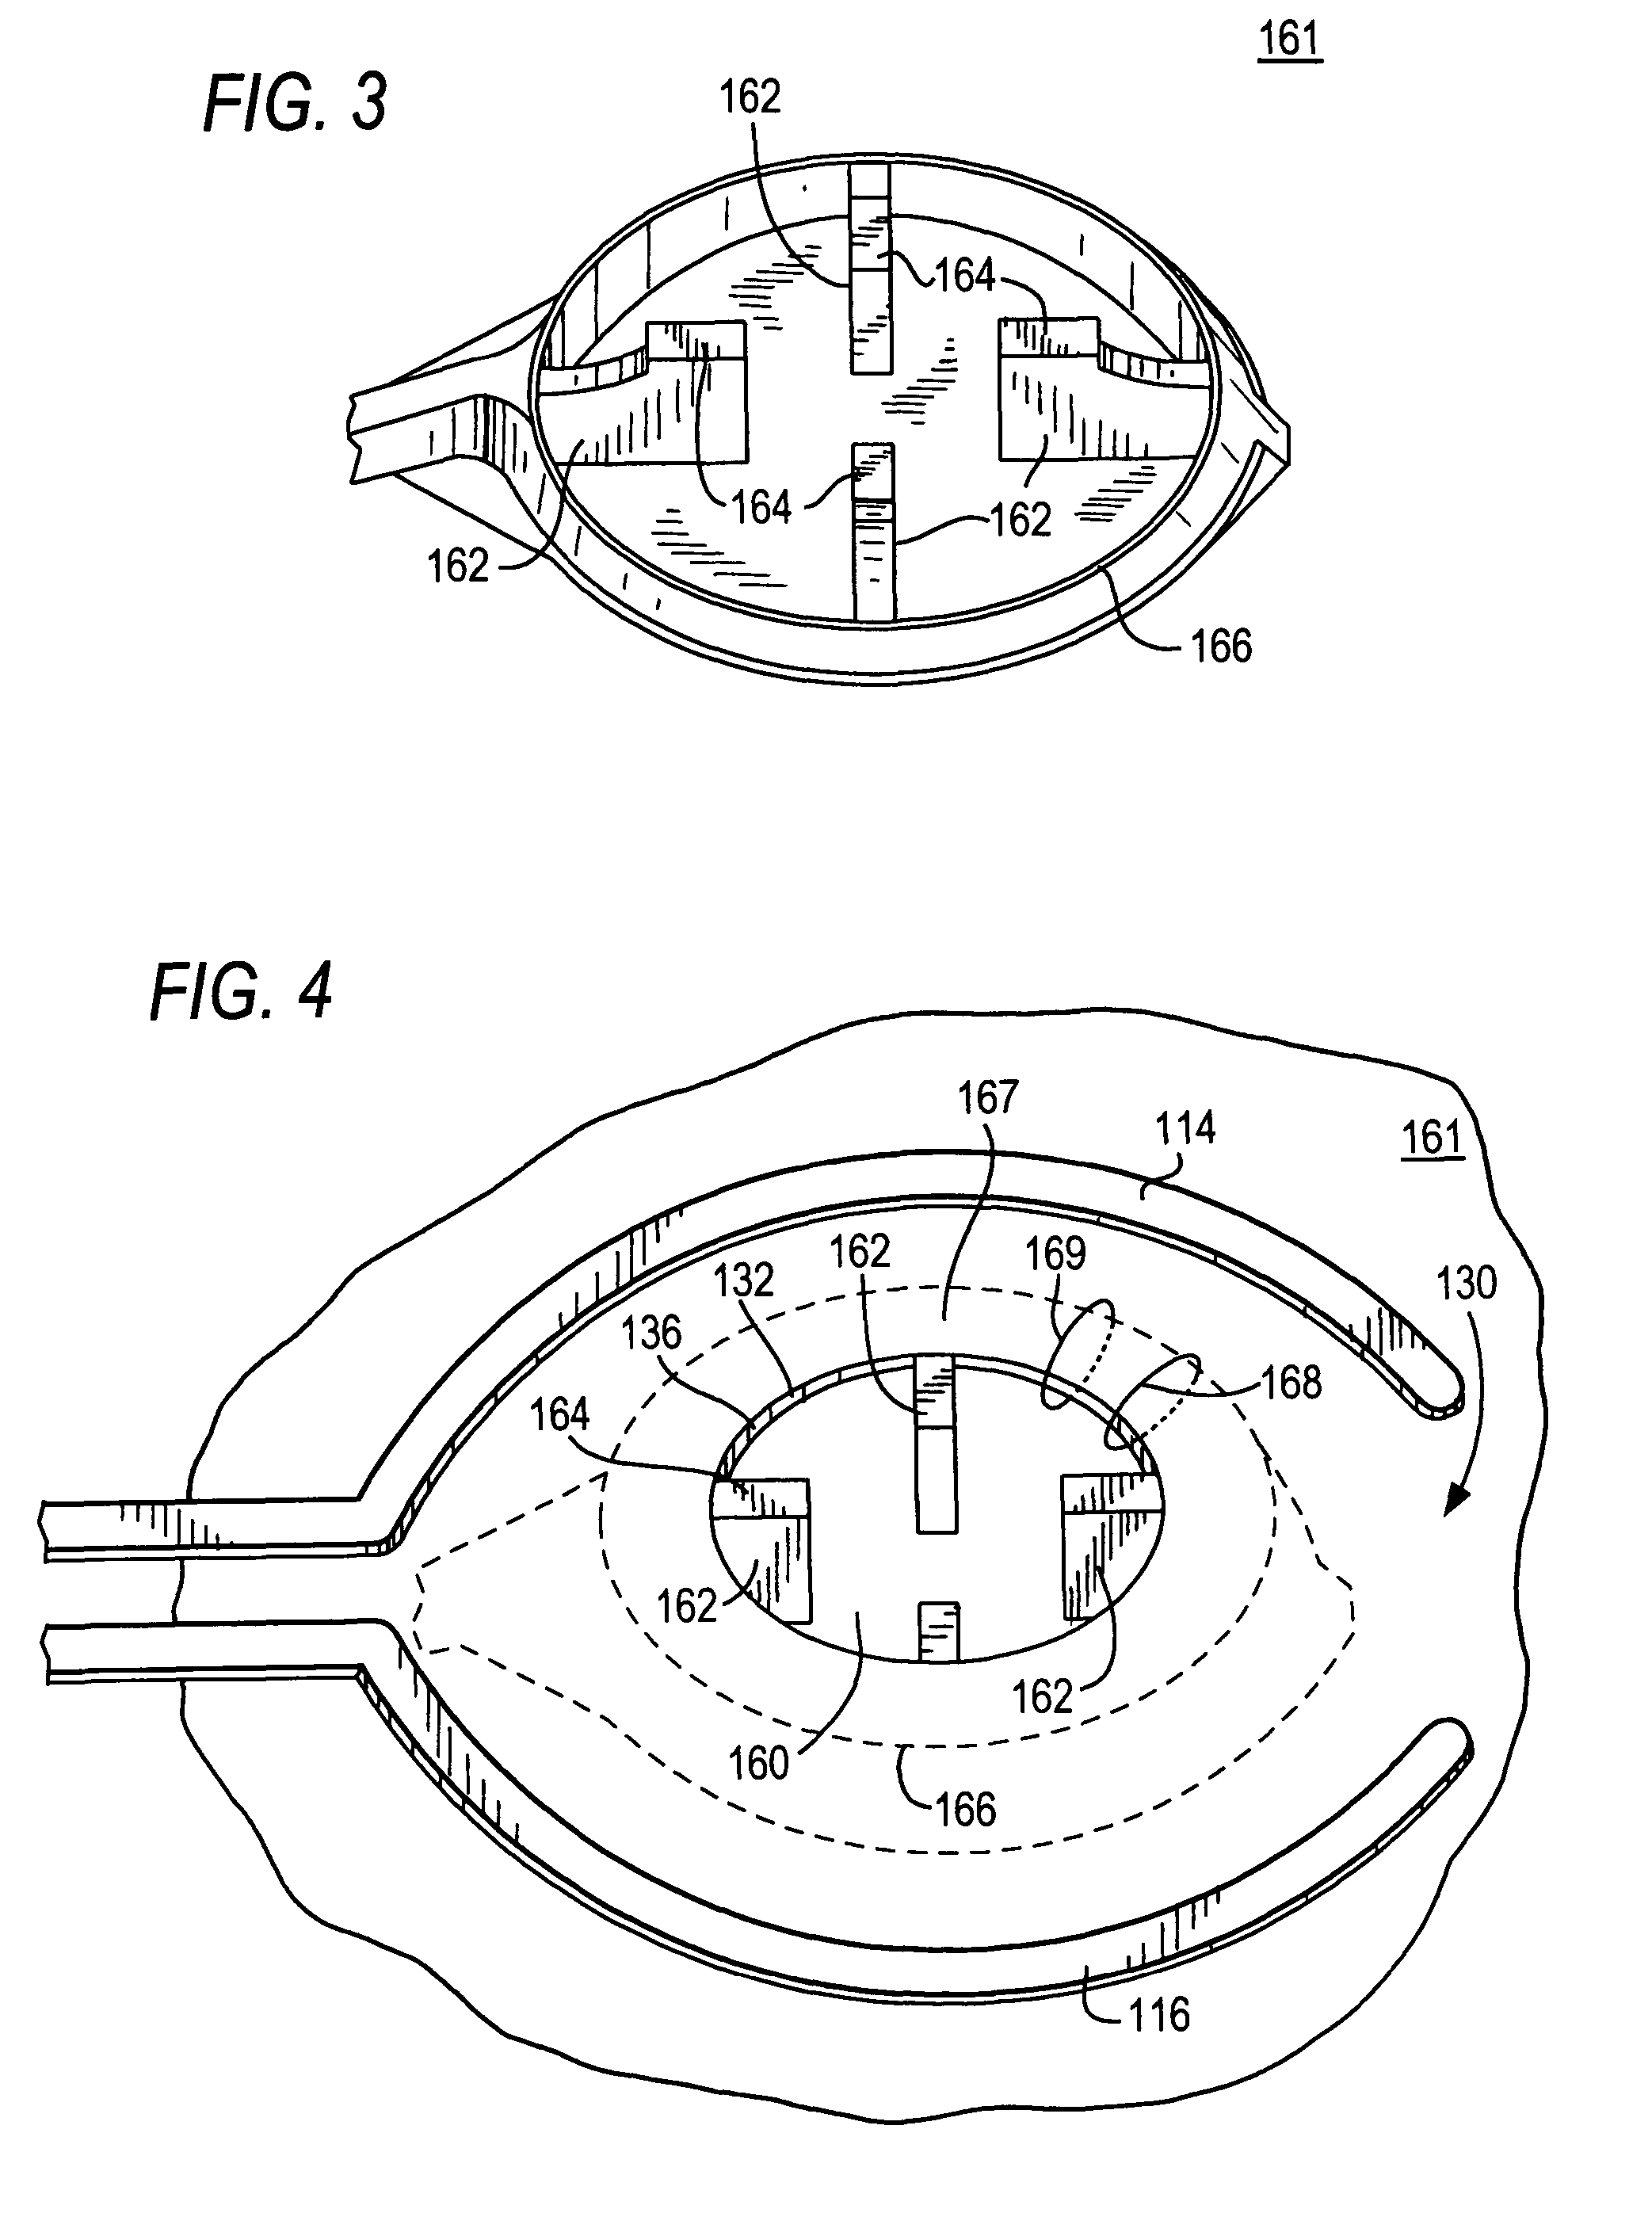 Temporary hemostatic plug apparatus and method of use